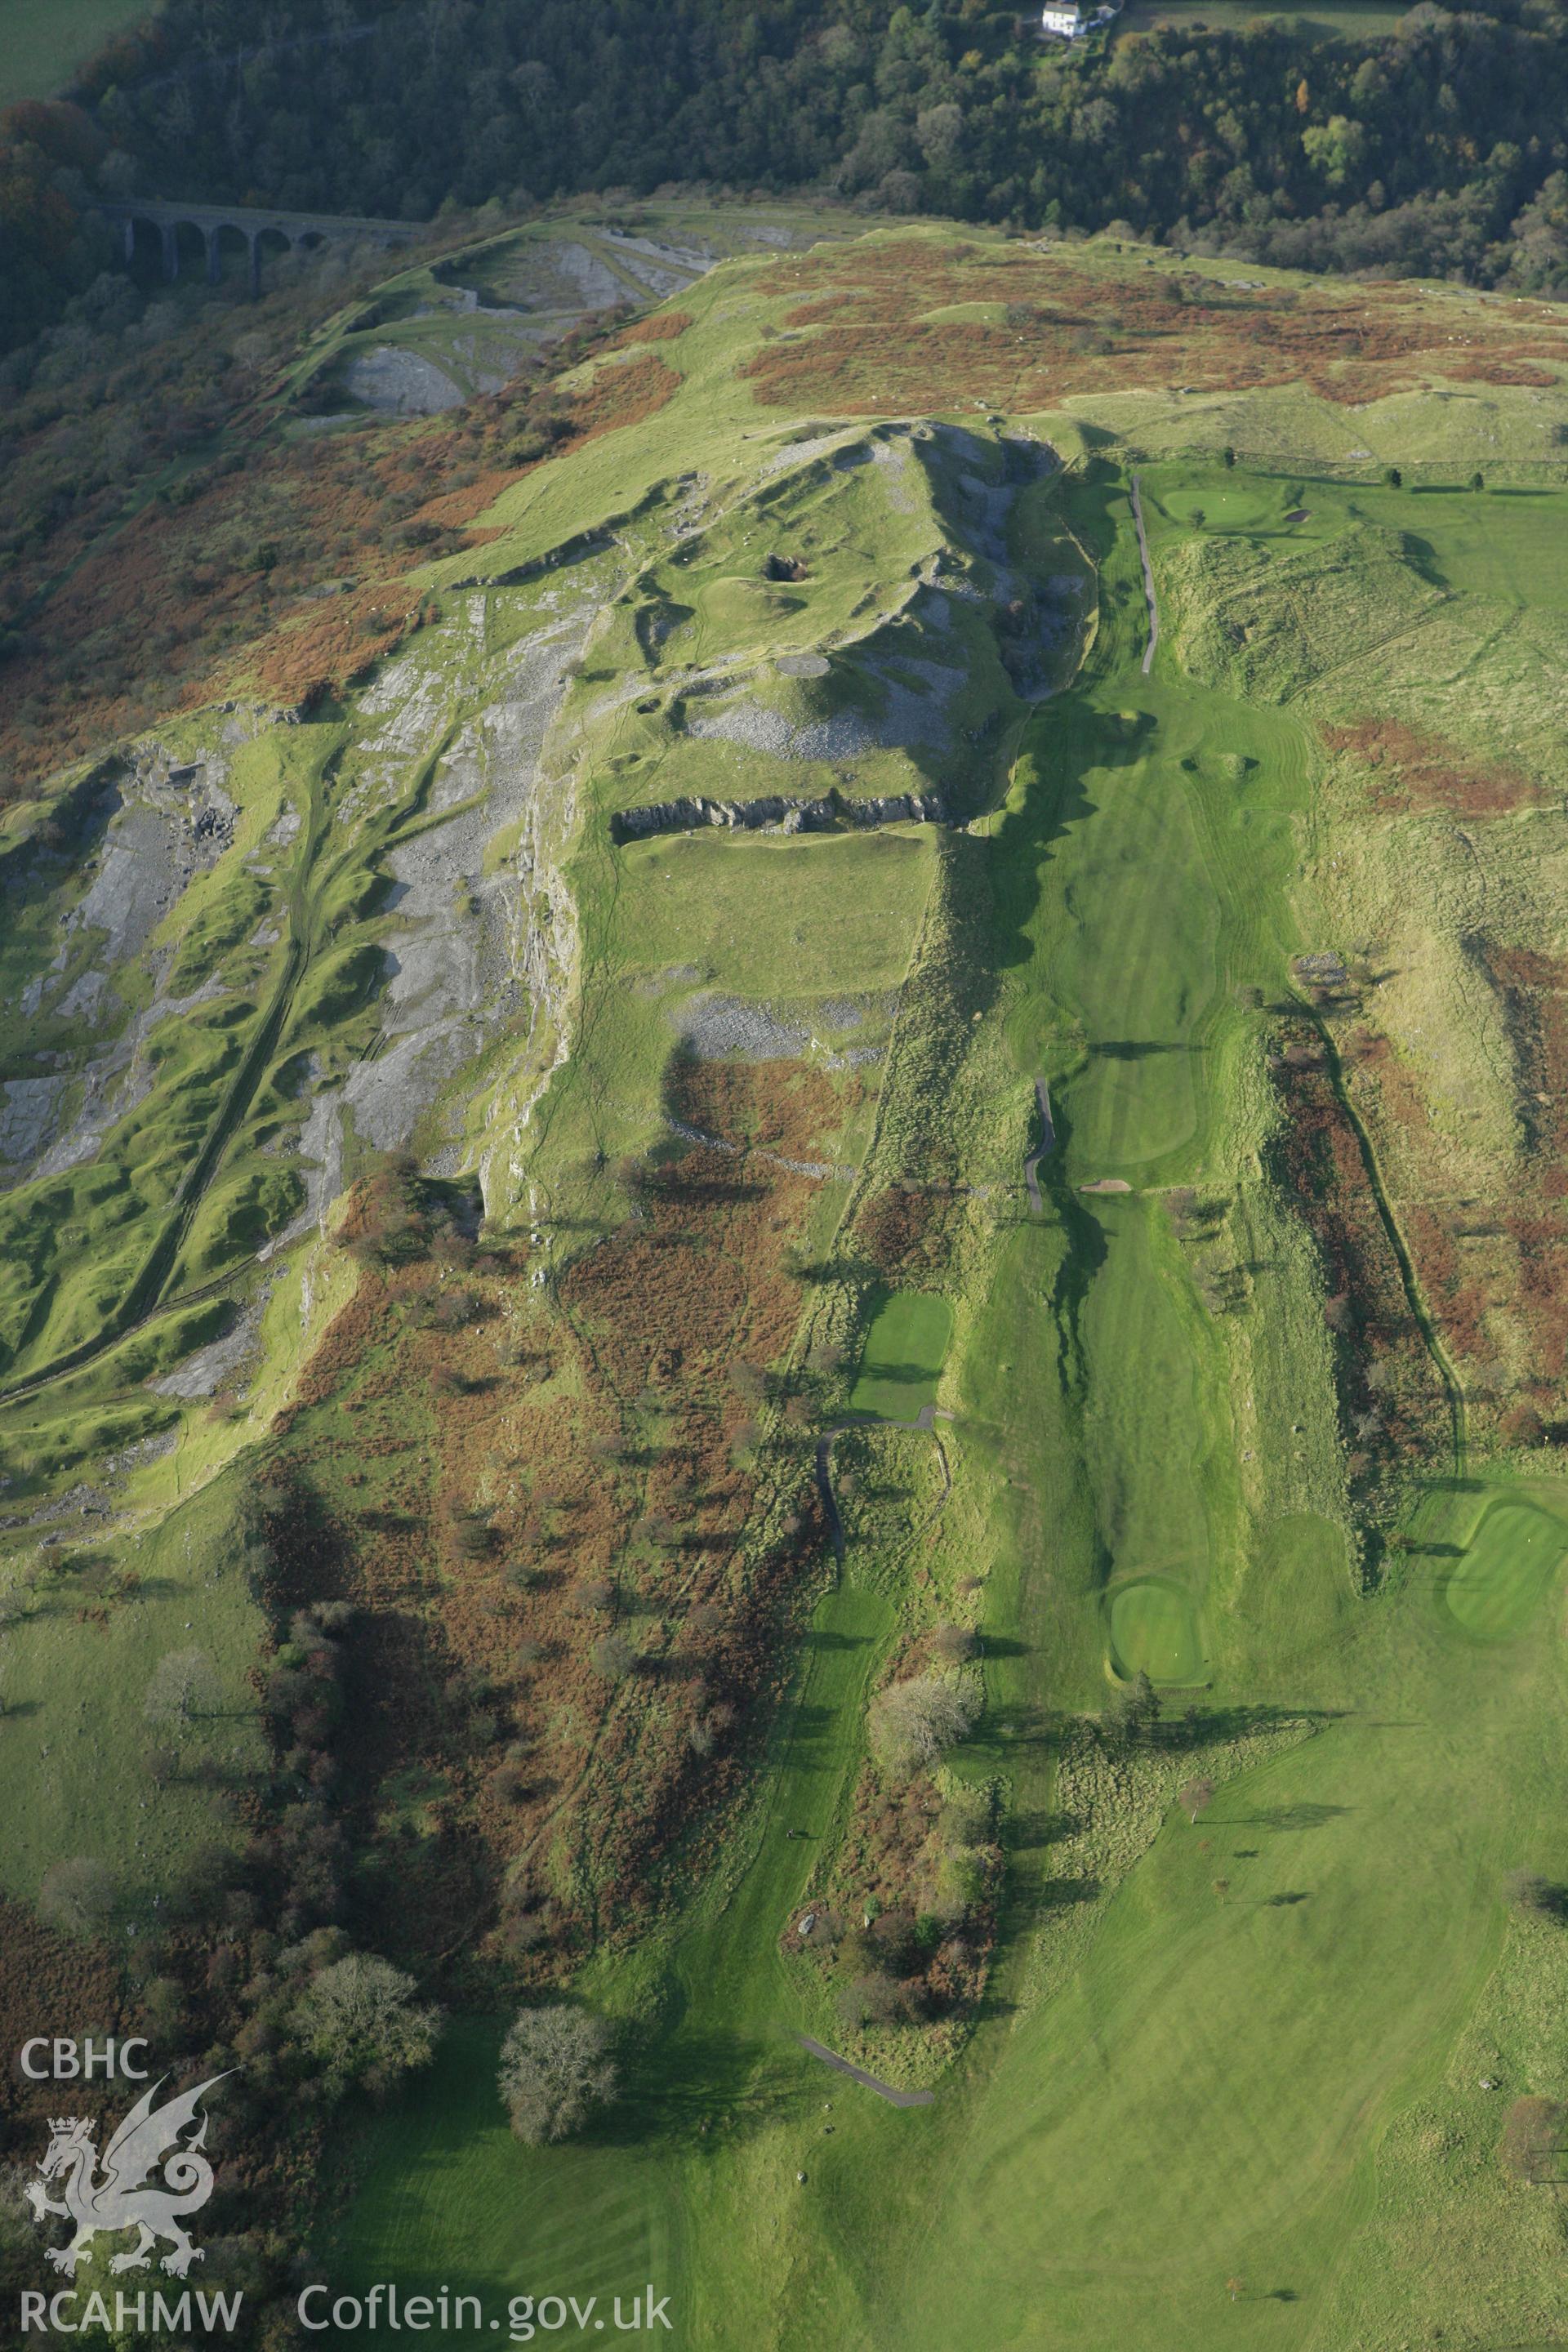 RCAHMW colour oblique photograph of Morlais Castle. Taken by Toby Driver on 16/10/2008.